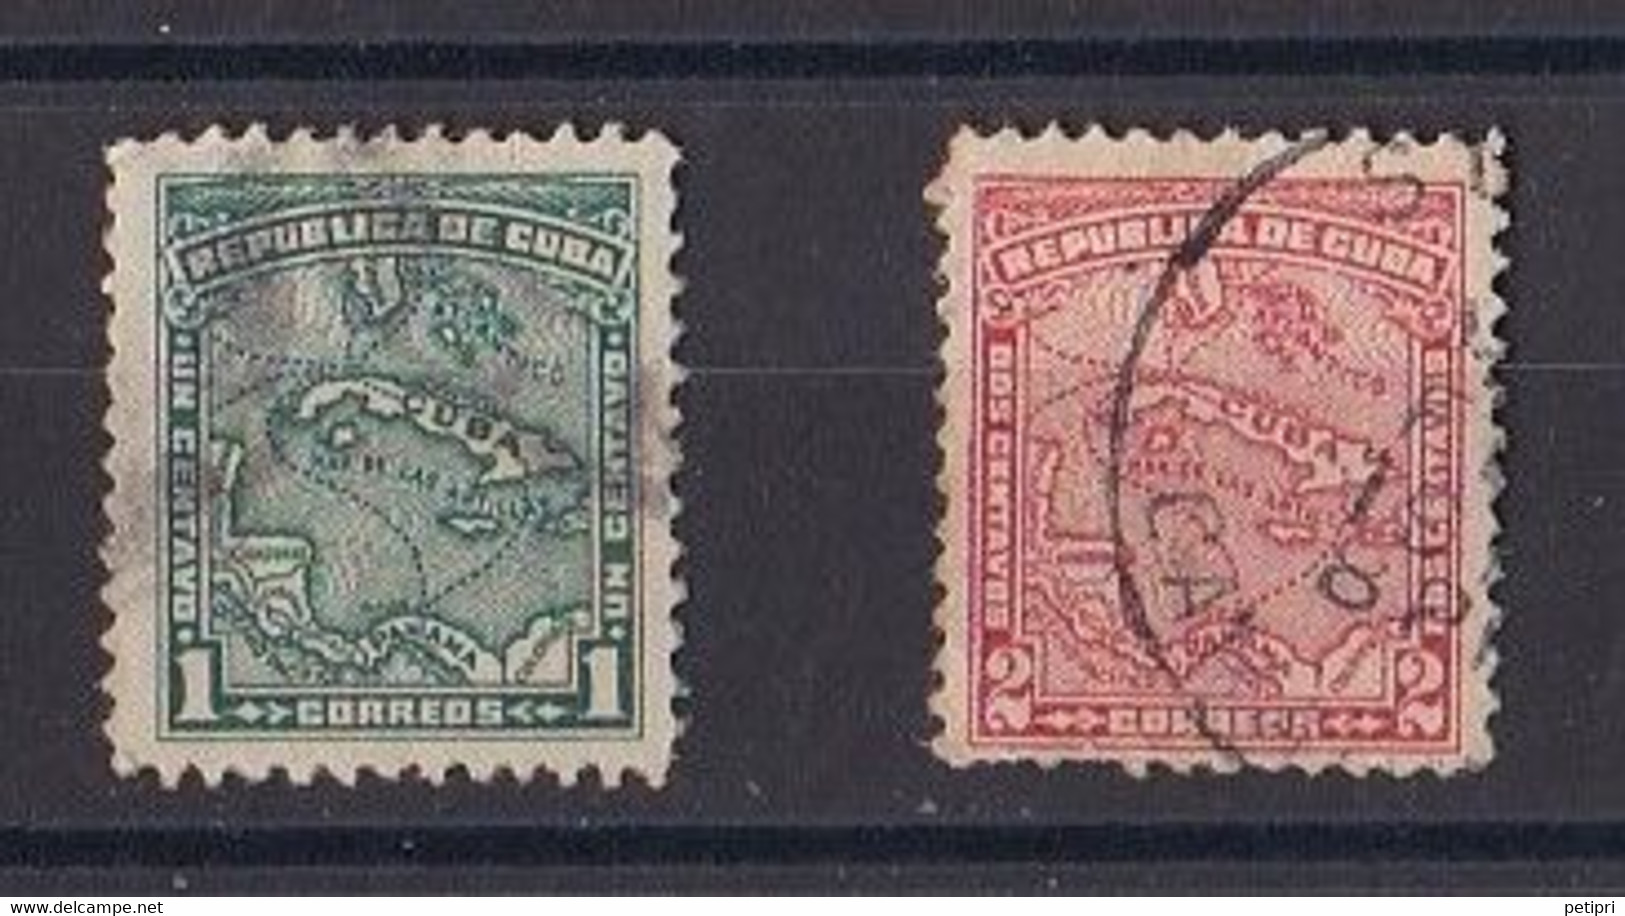 Cuba  République 1930-1949   Y&T  N ° 166  167  Oblitéré - Oblitérés